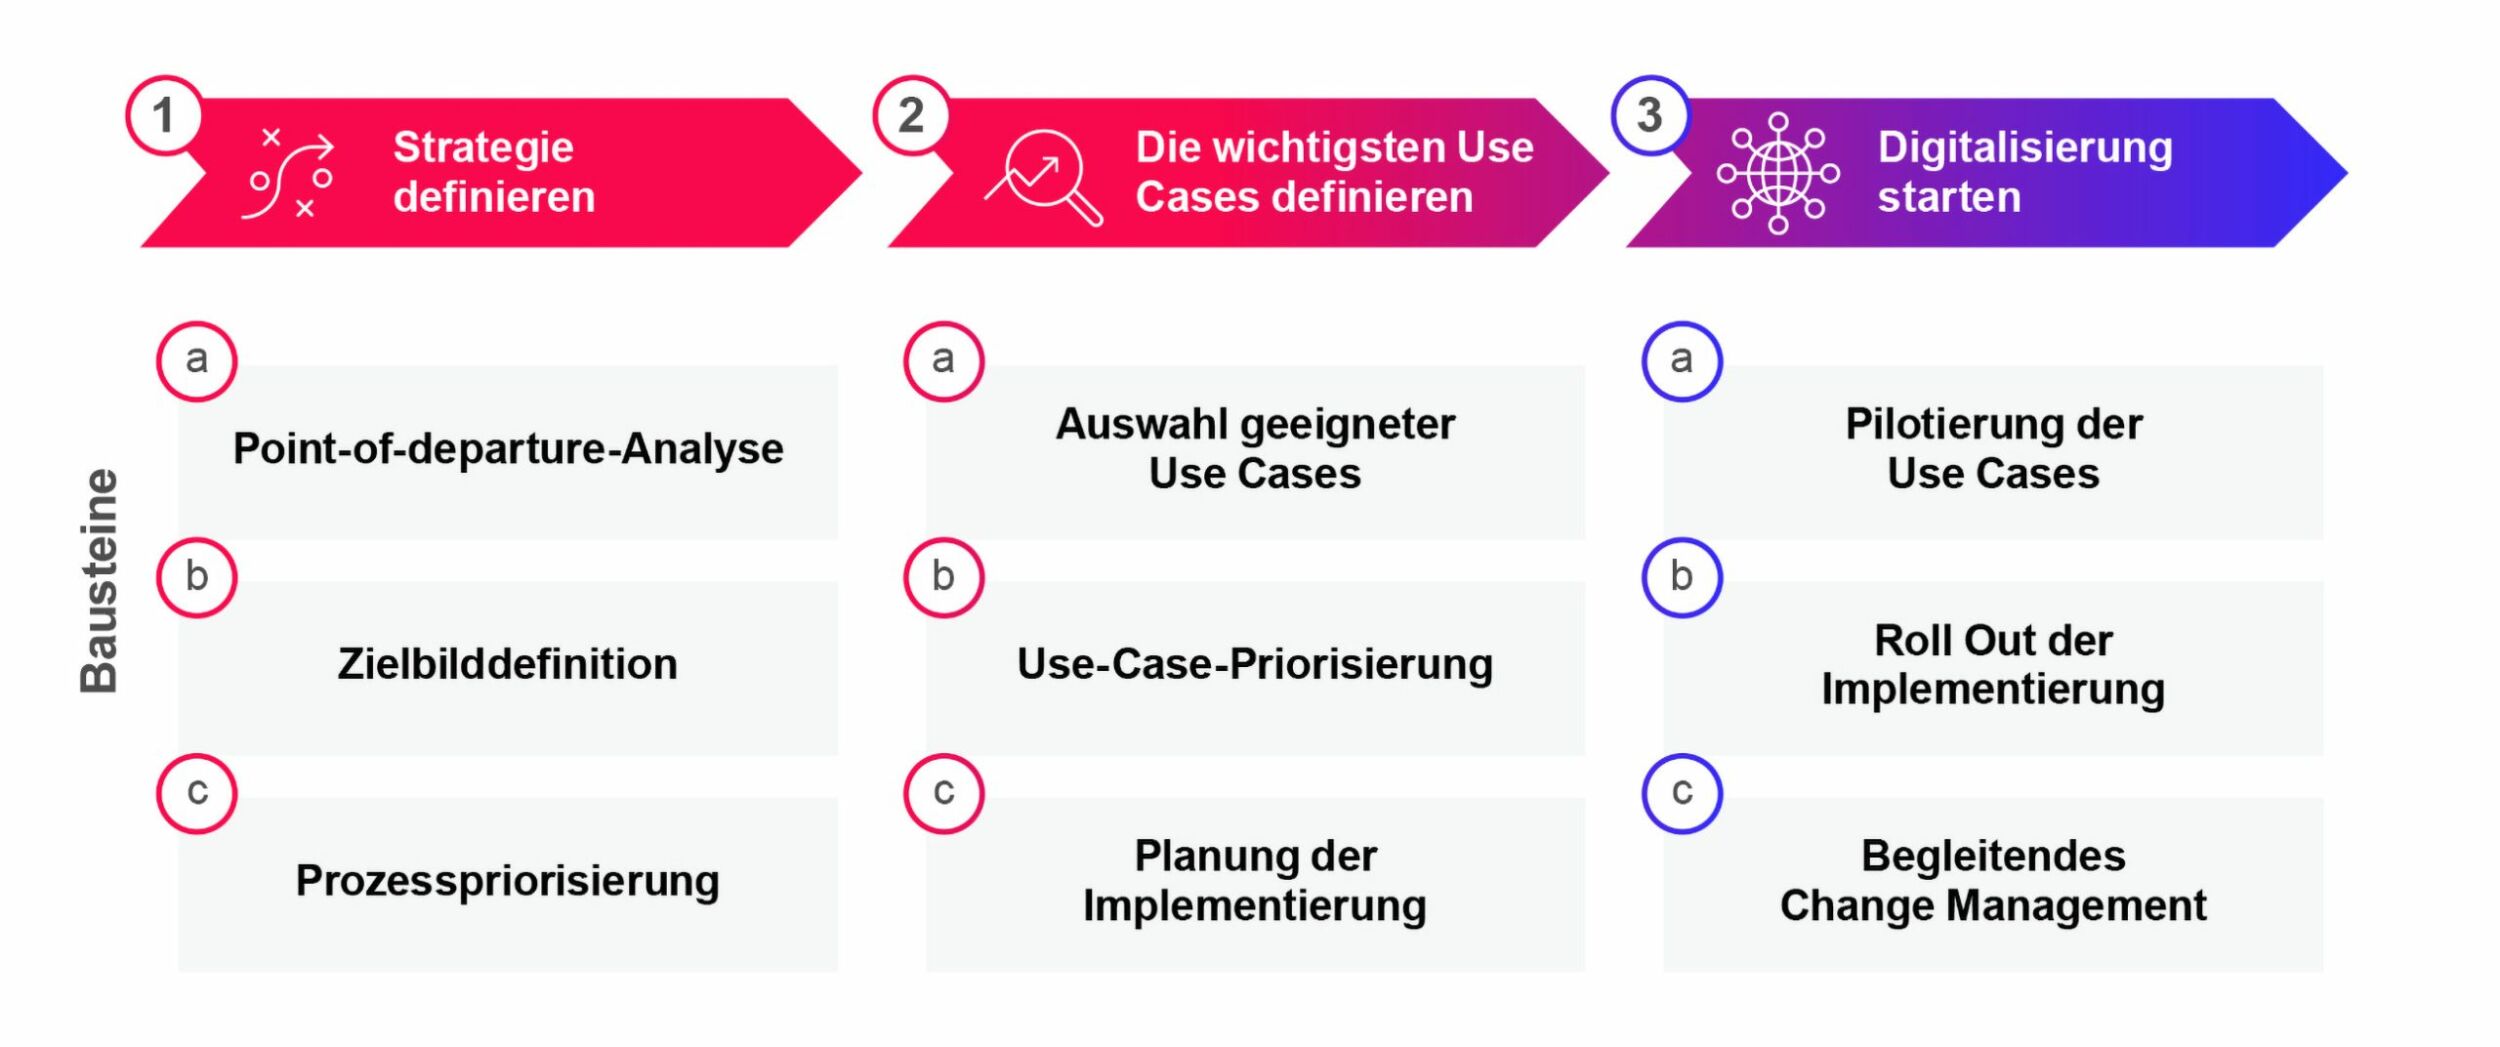 CGI verfolgt bei Digitalisierungsprojekten und der Einführung von KI in Produktionsprozessen einen 3-Stufen-Ansatz mit der Strategiedefinition, der Use-Case-Identifizierung und -Implementierung. (Bild: CGI Deutschland B.V. & Co. KG)